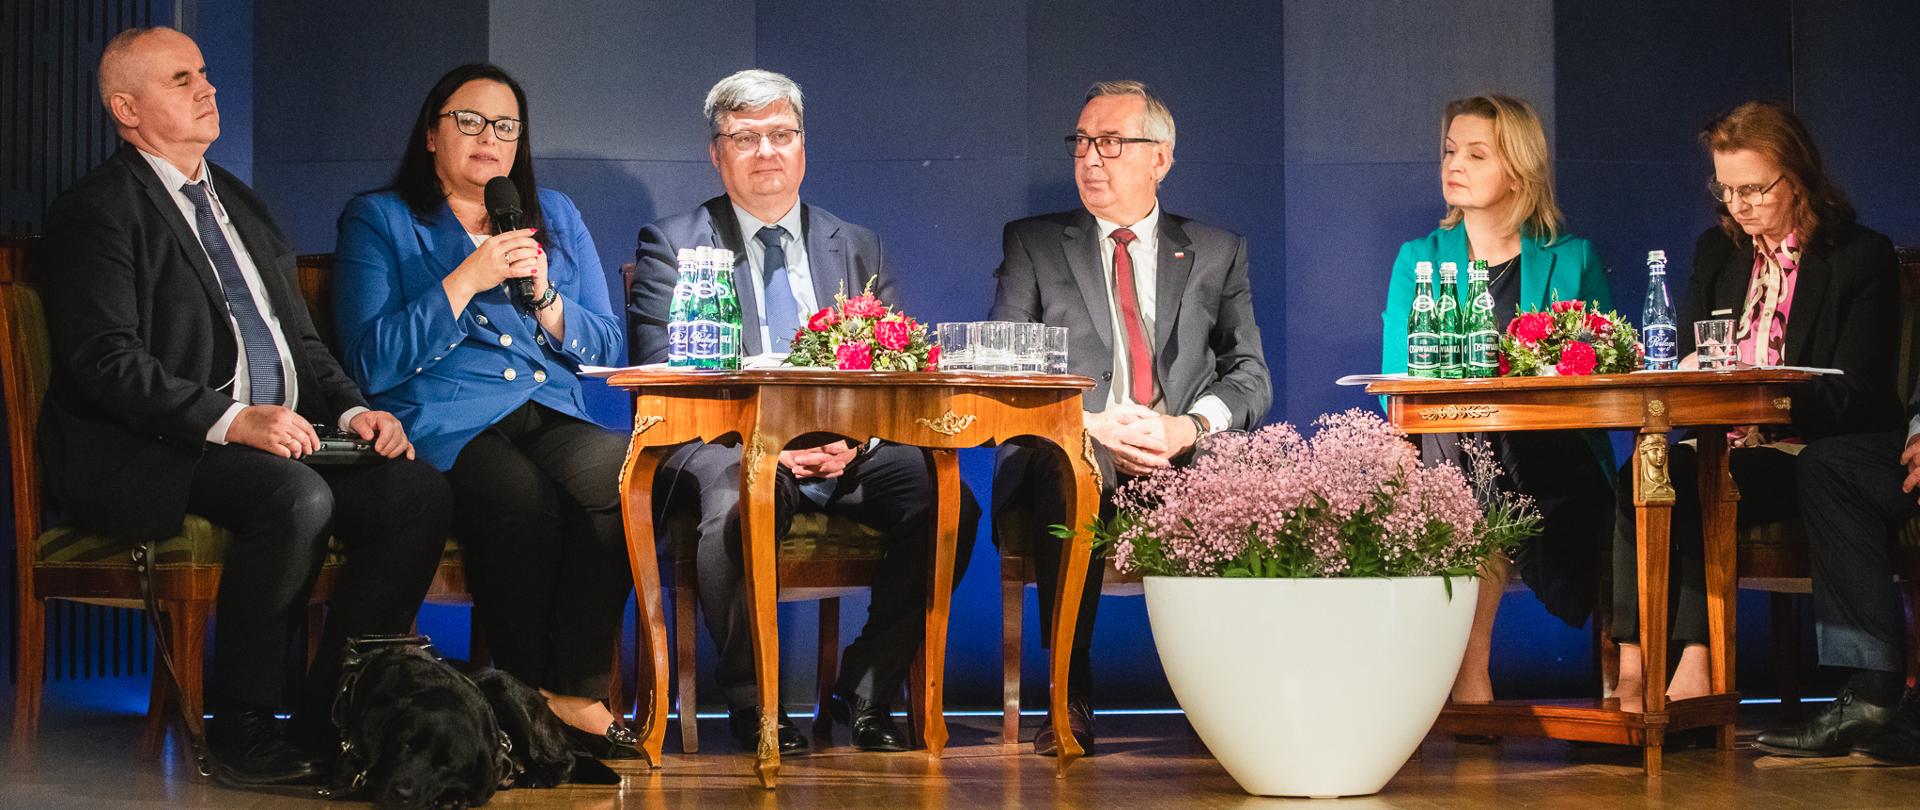 Grupa osób siedzi przy stolikach. Druga od lewej wiceminister Małgorzata Jarosińska-Jedynak z mikrofonem.